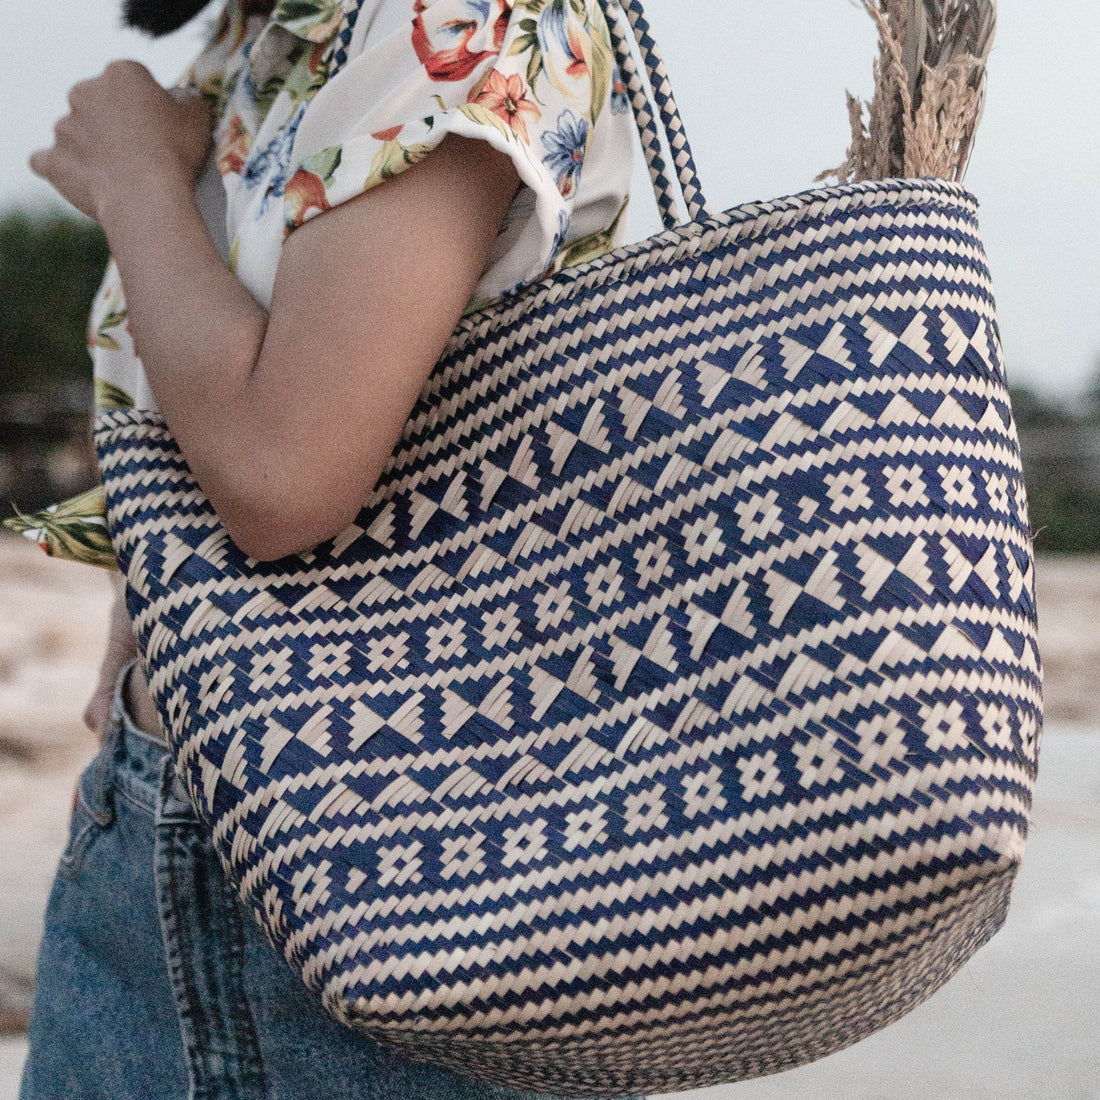 Blaue Einkaufstasche | Strandtasche | Tragetasche KIDUL aus Rattan